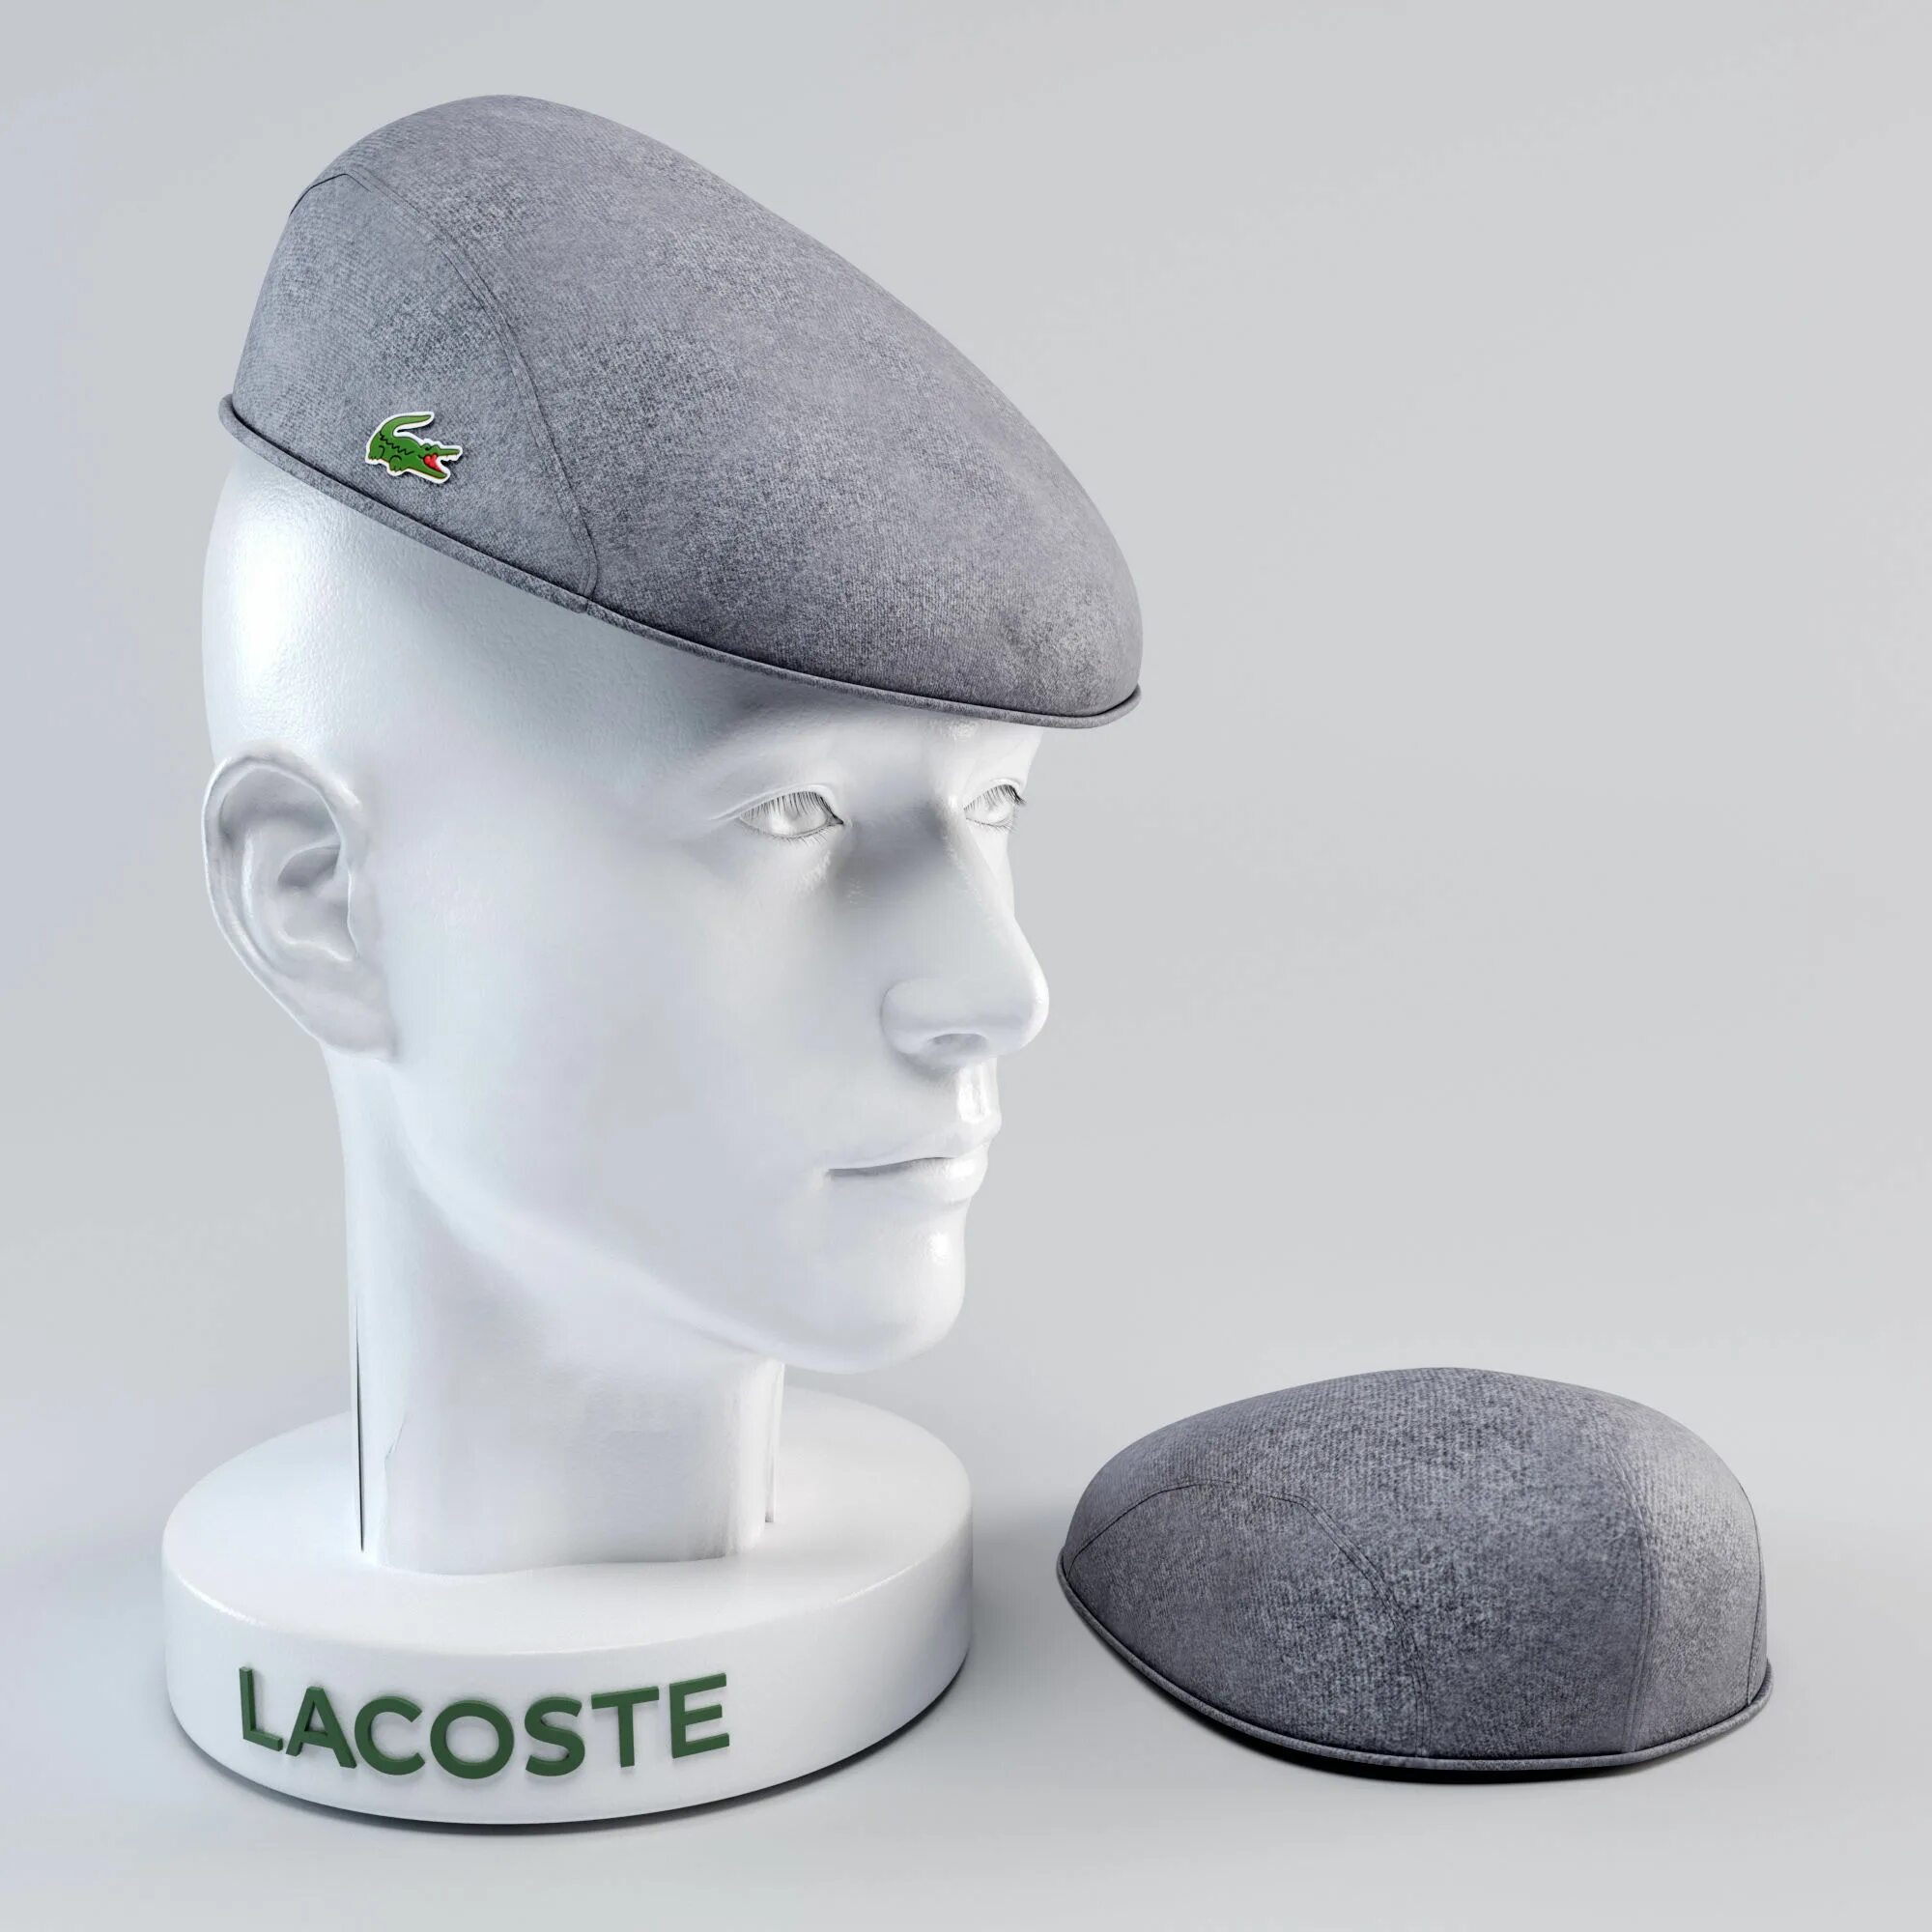 Lacoste Flat cap. 3d model VAG cap. Garrison cap 3d model. Кепка 3д модель.